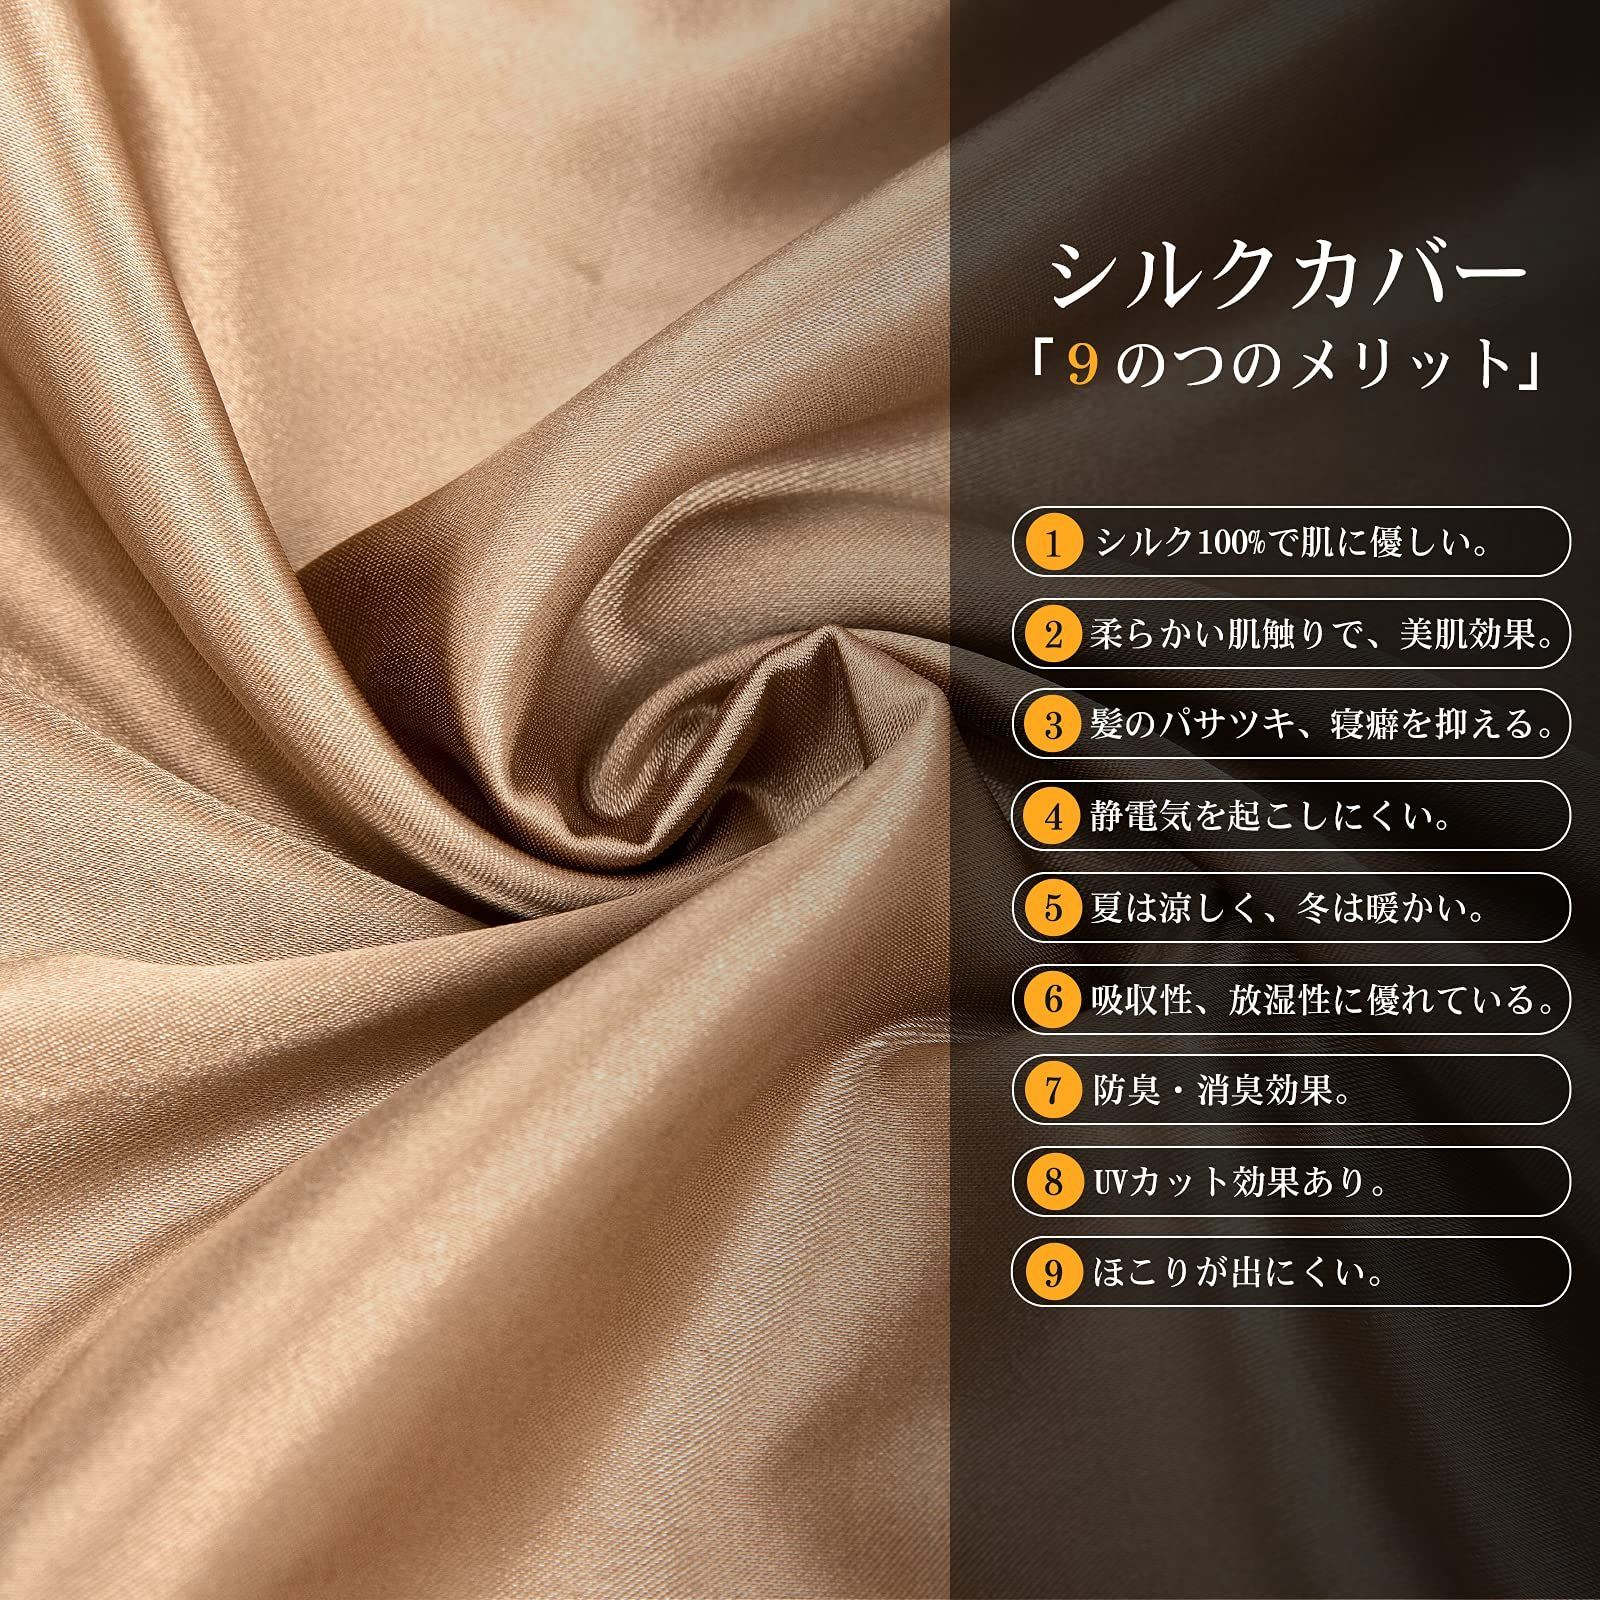 即出荷】 KUMASEN シルク枕カバー フリル 100%蚕糸シルク ピローケース 高級枕